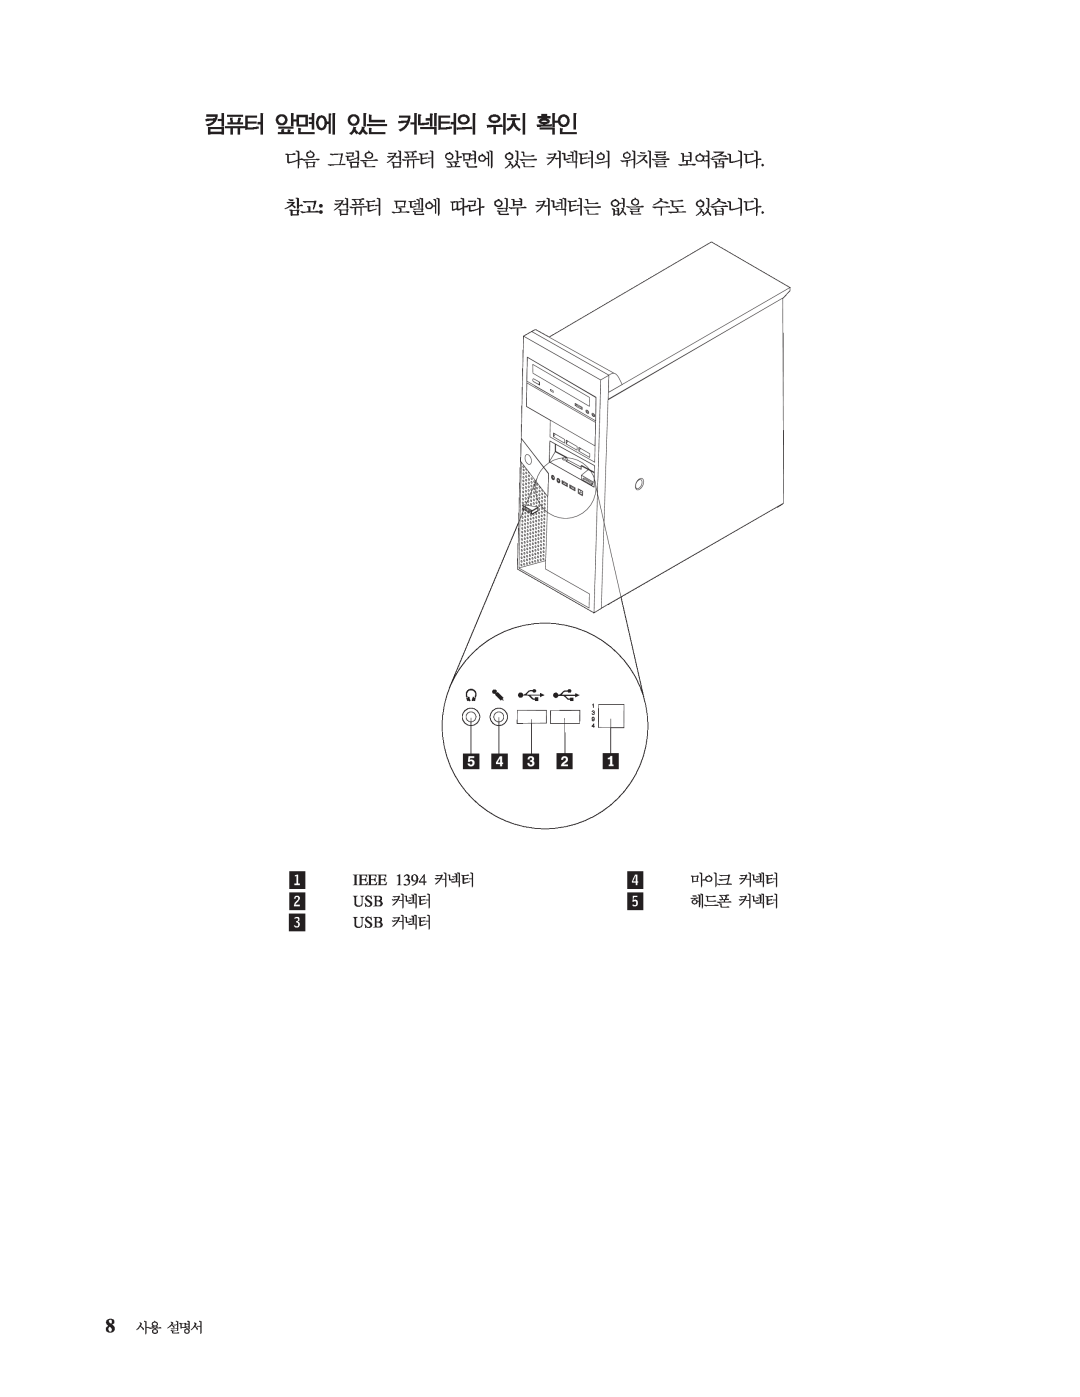 IBM 8143 manual Ieee 